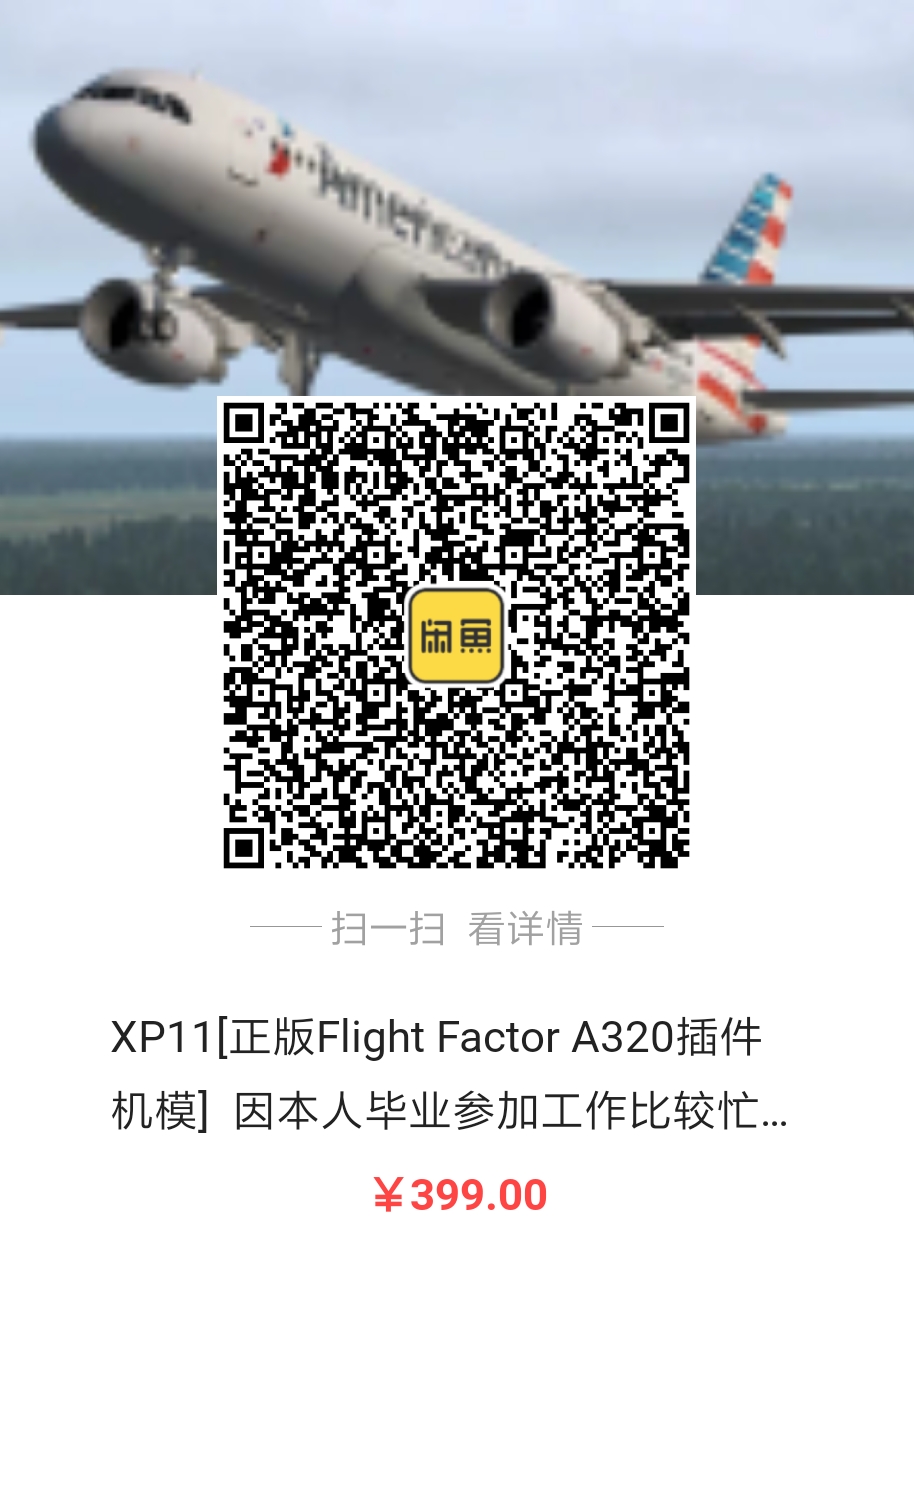 出售Flight Factor A320正版激活码，因毕业工作忙-5931 